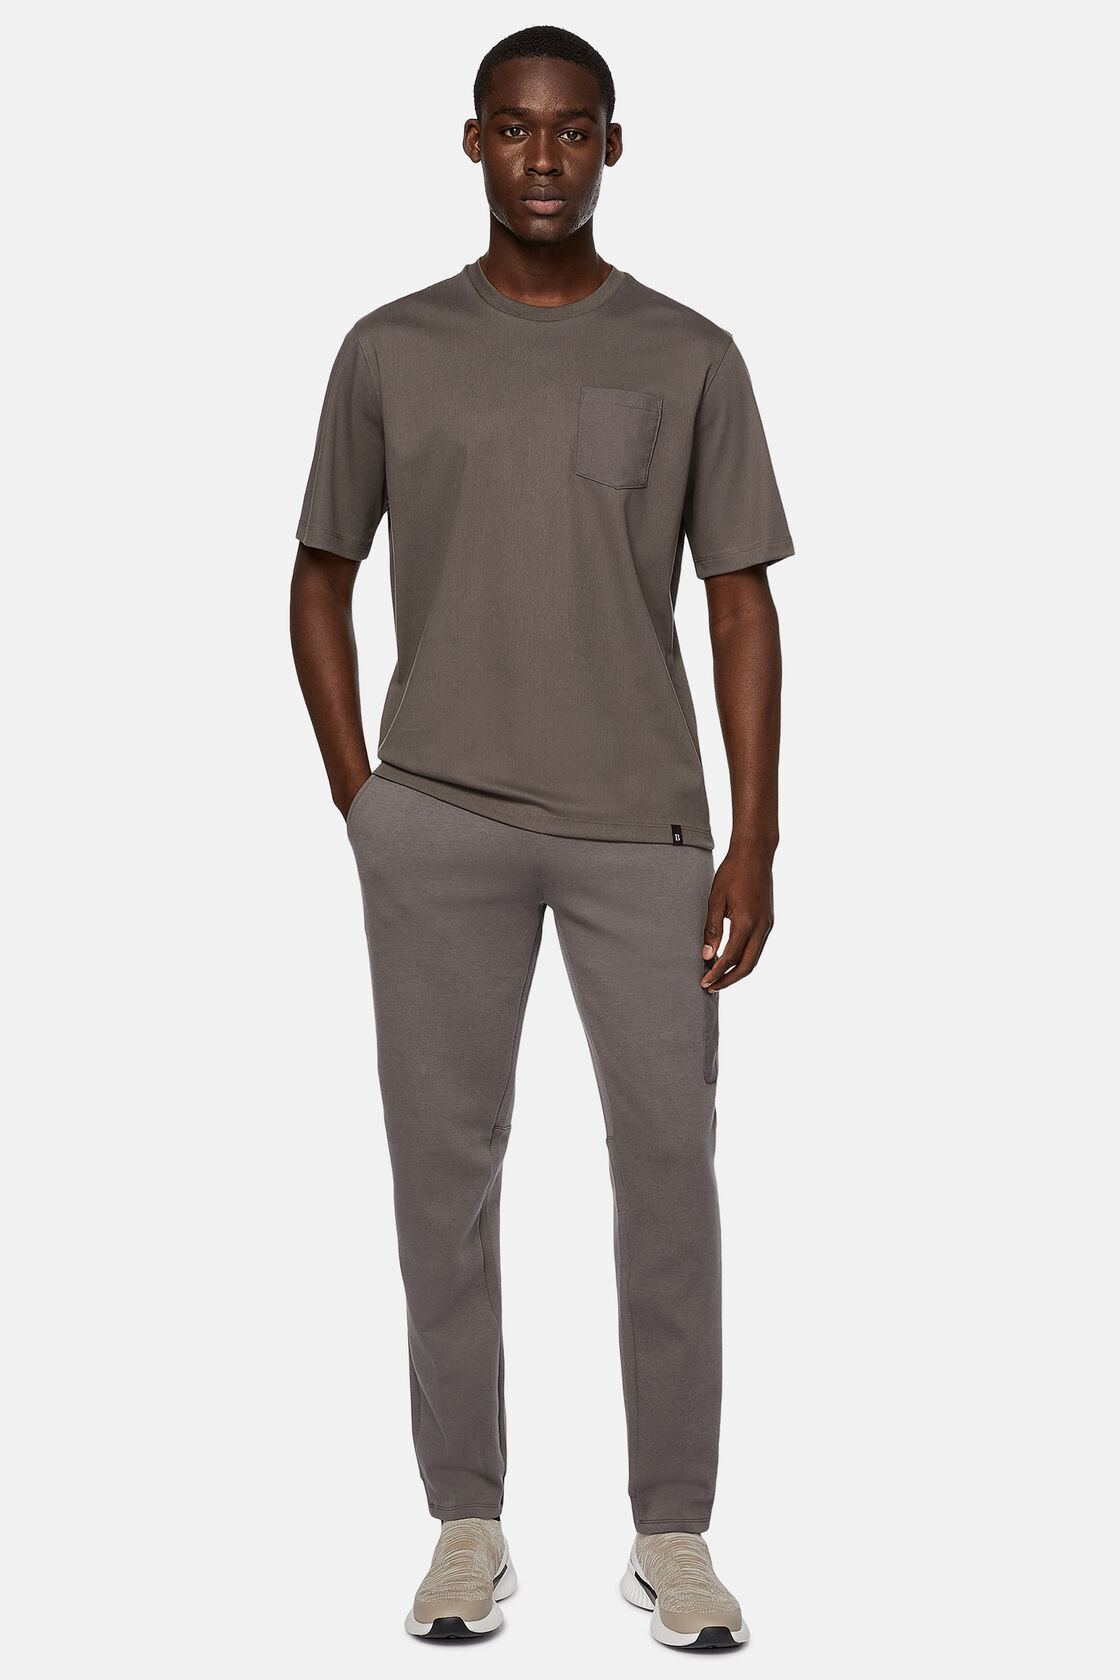 Κοντομάνικο μπλουζάκι από ζέρσεϊ υψηλών επιδόσεων, Dark Grey, hi-res